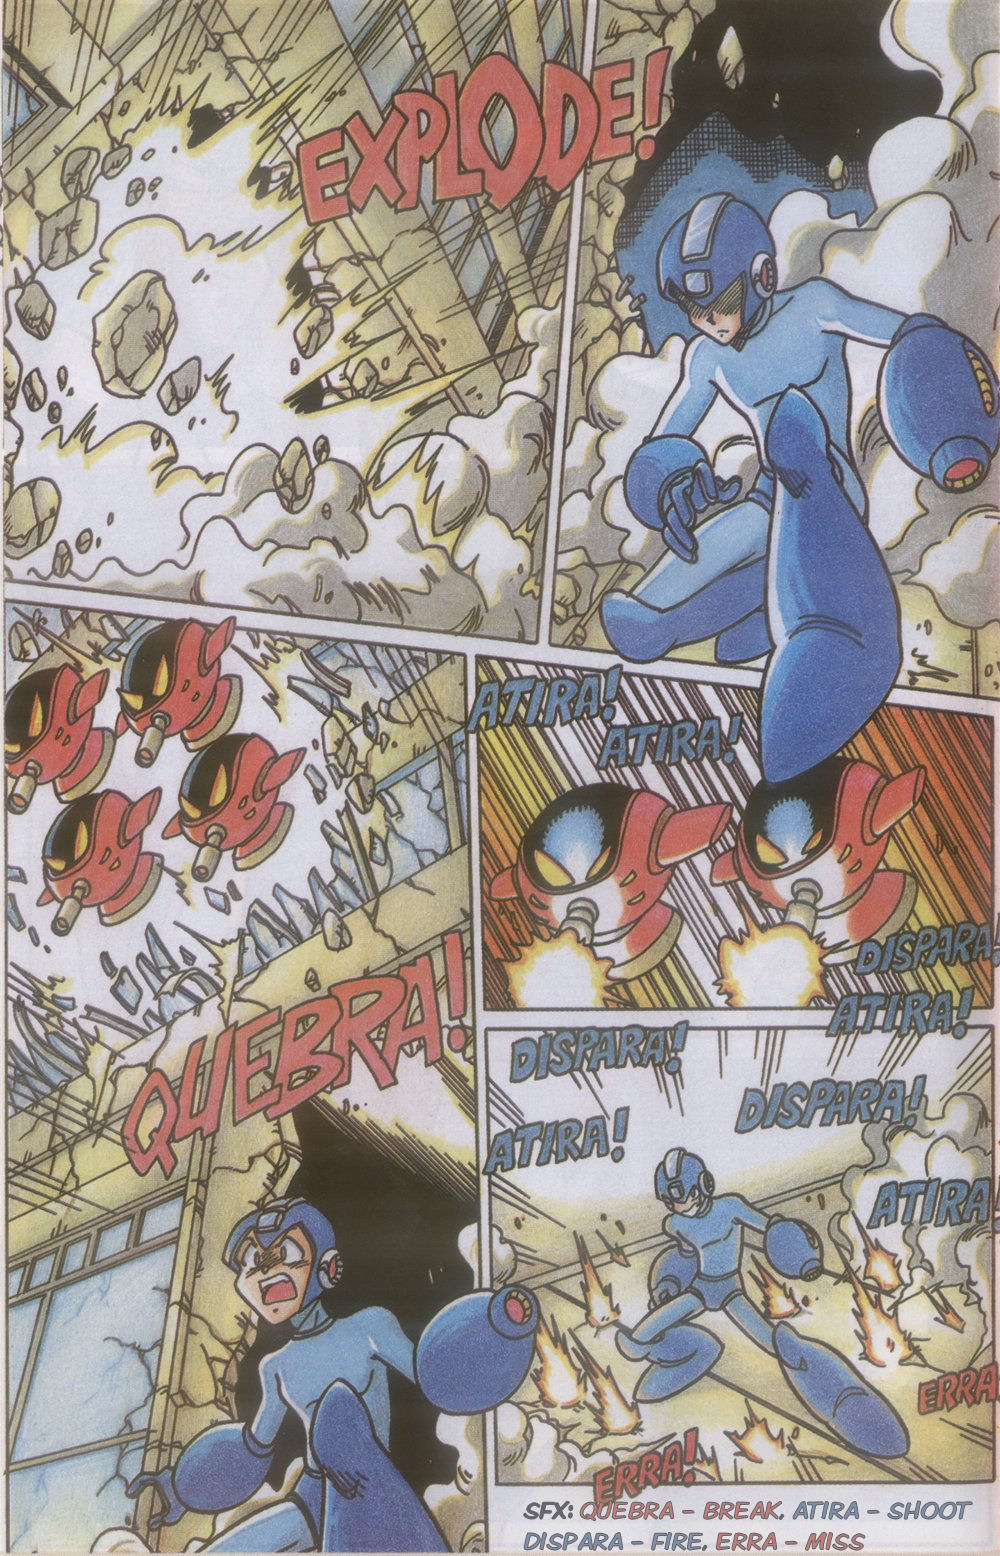 Tip: Click on the Novas Aventuras de Megaman 11 comic image to go to the ne...